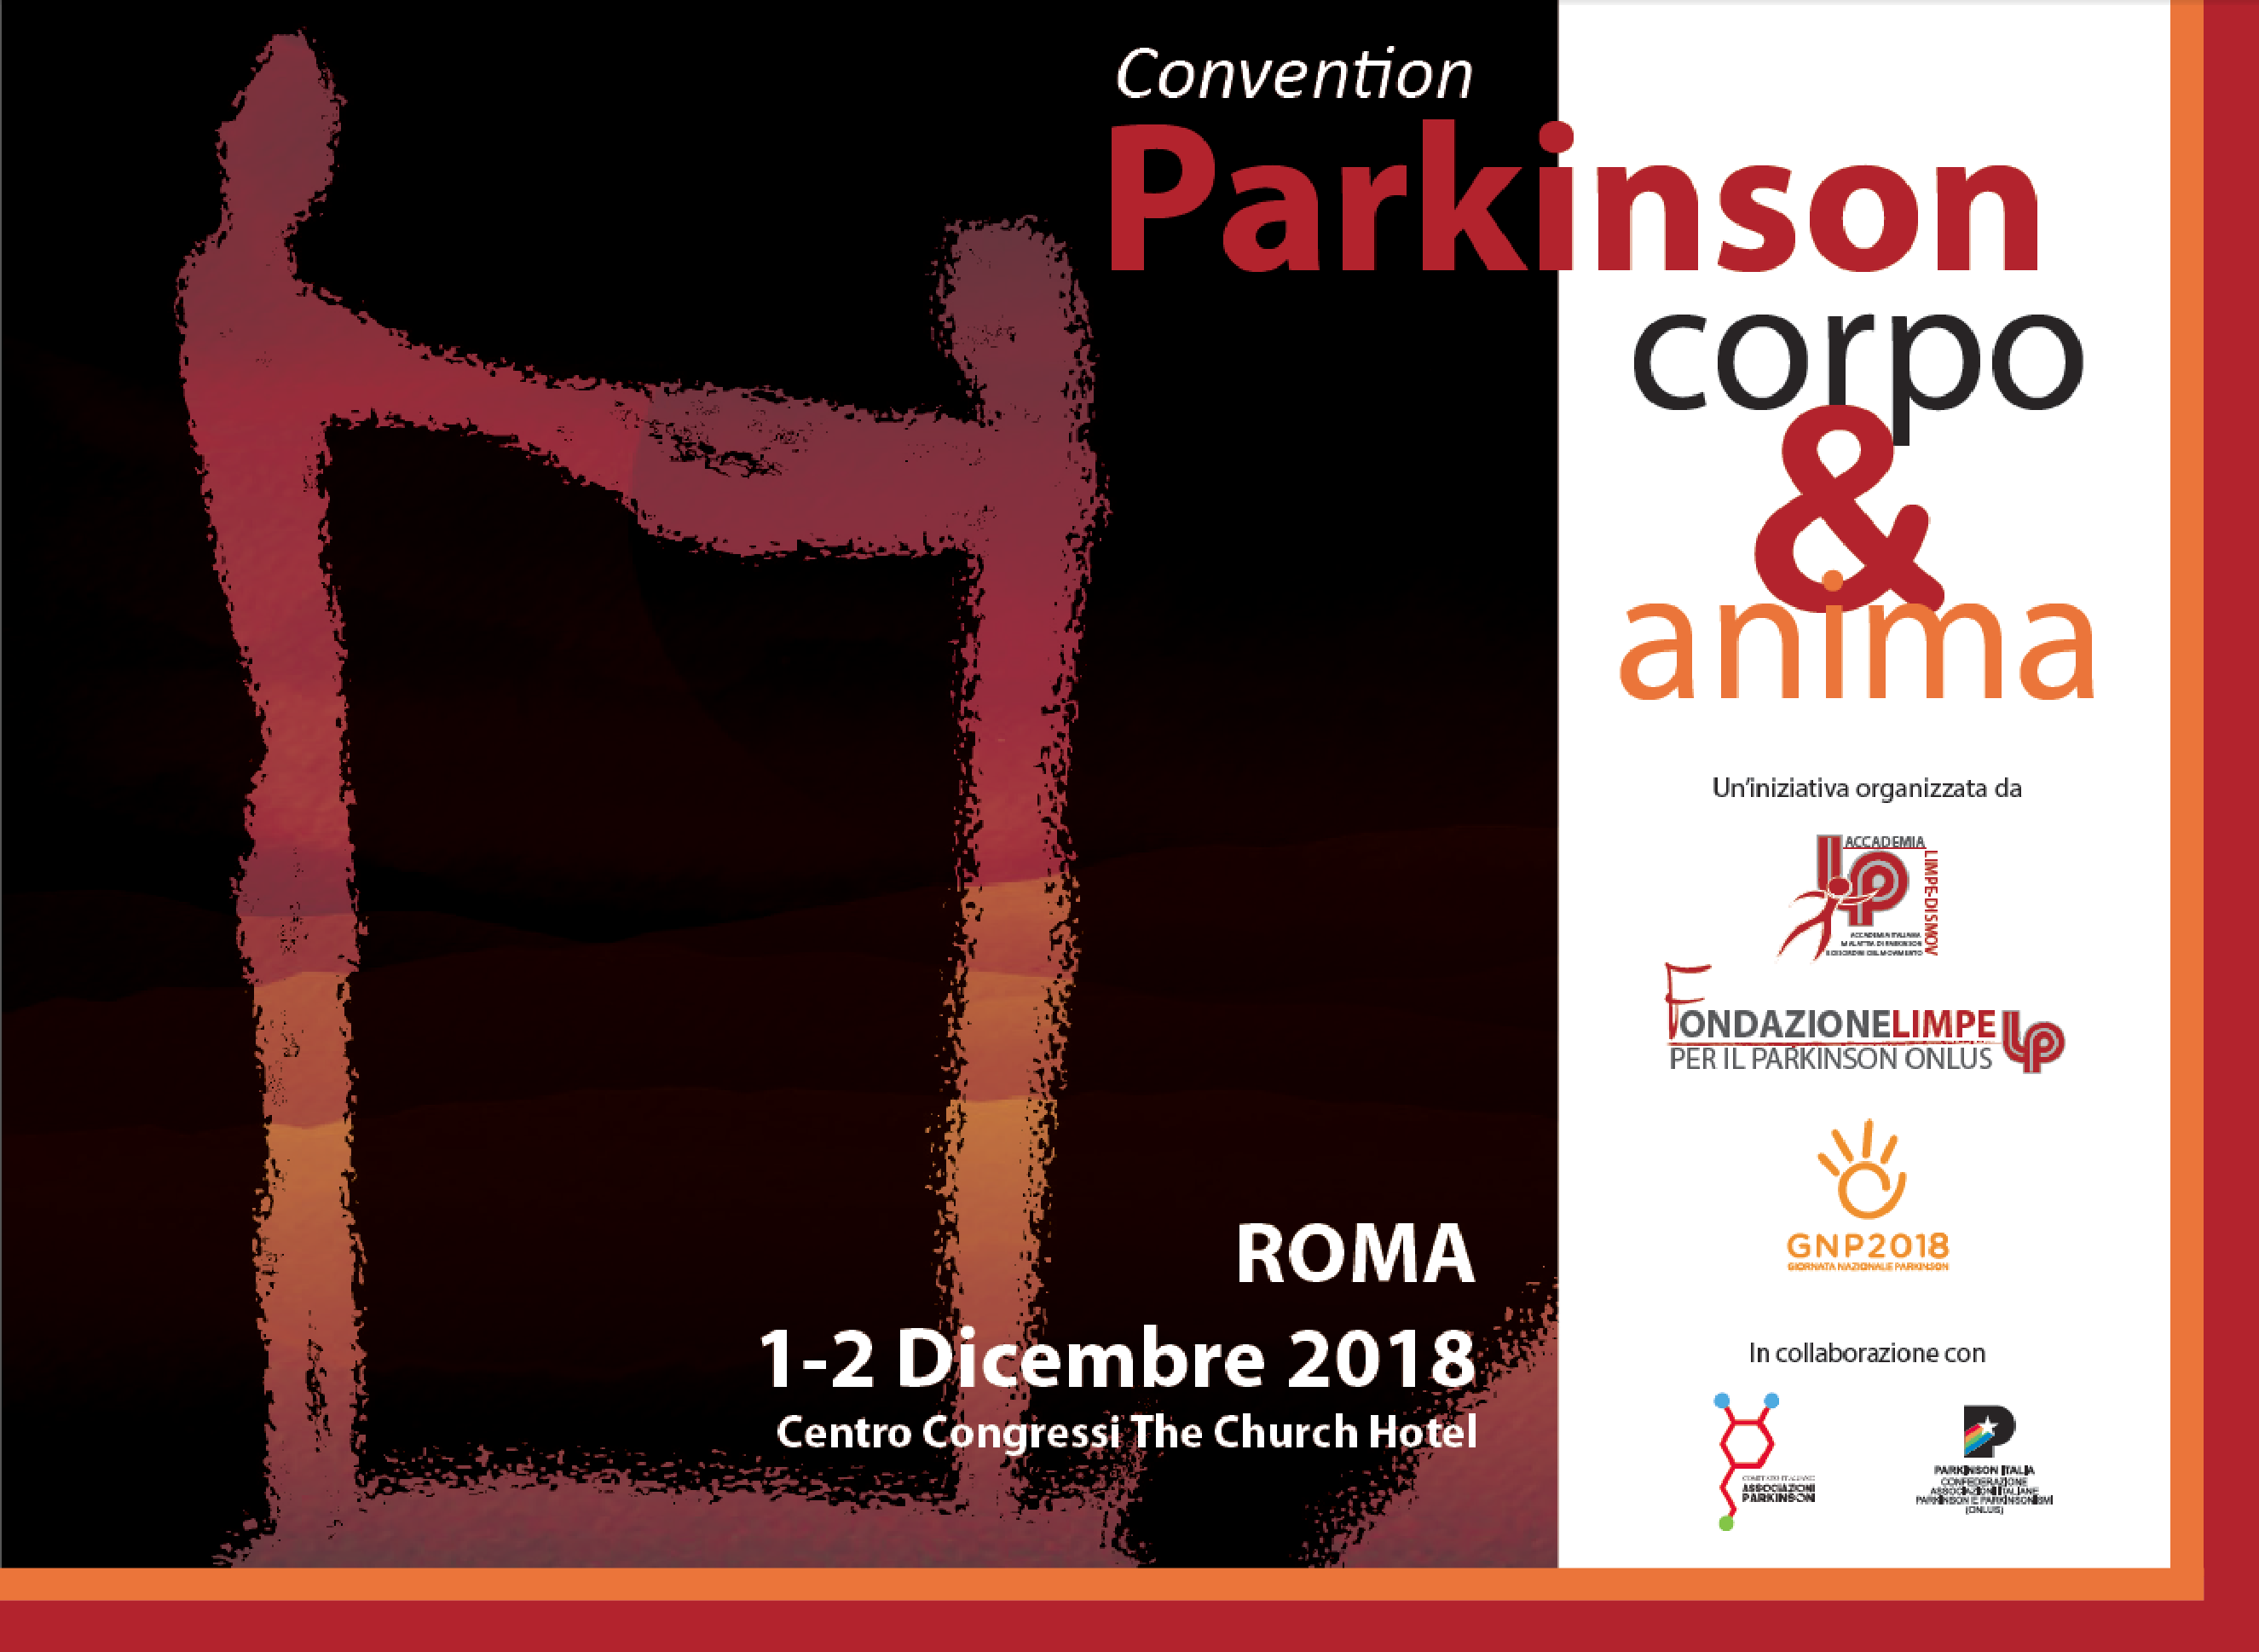 Convention Pazienti Parkinson Roma 2018